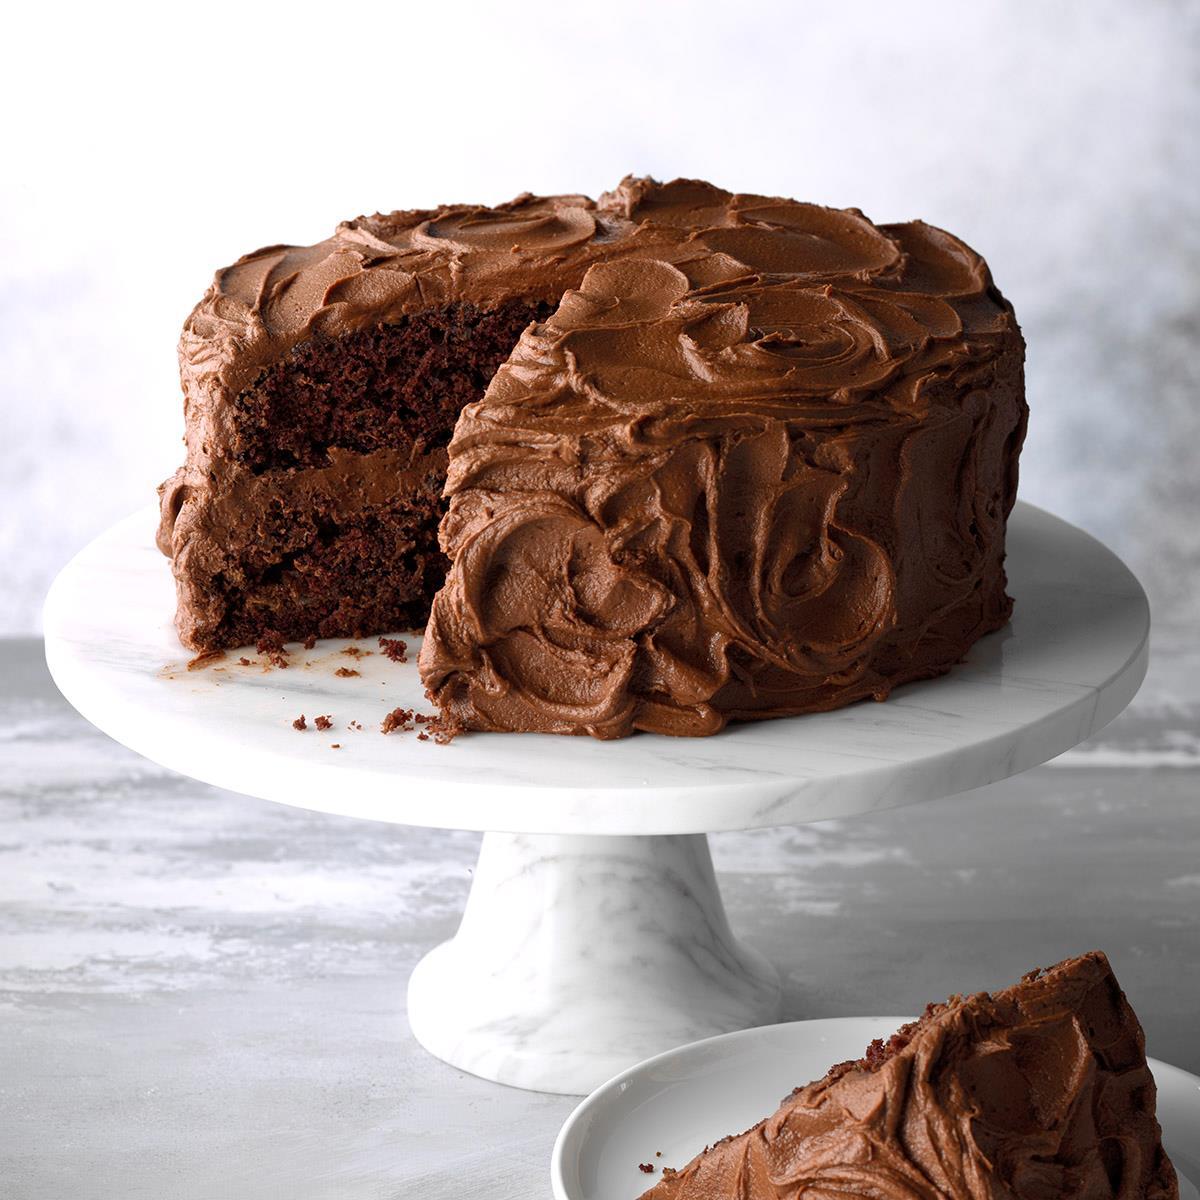 Sauerkraut Chocolate Cake Recipe: How to Make It